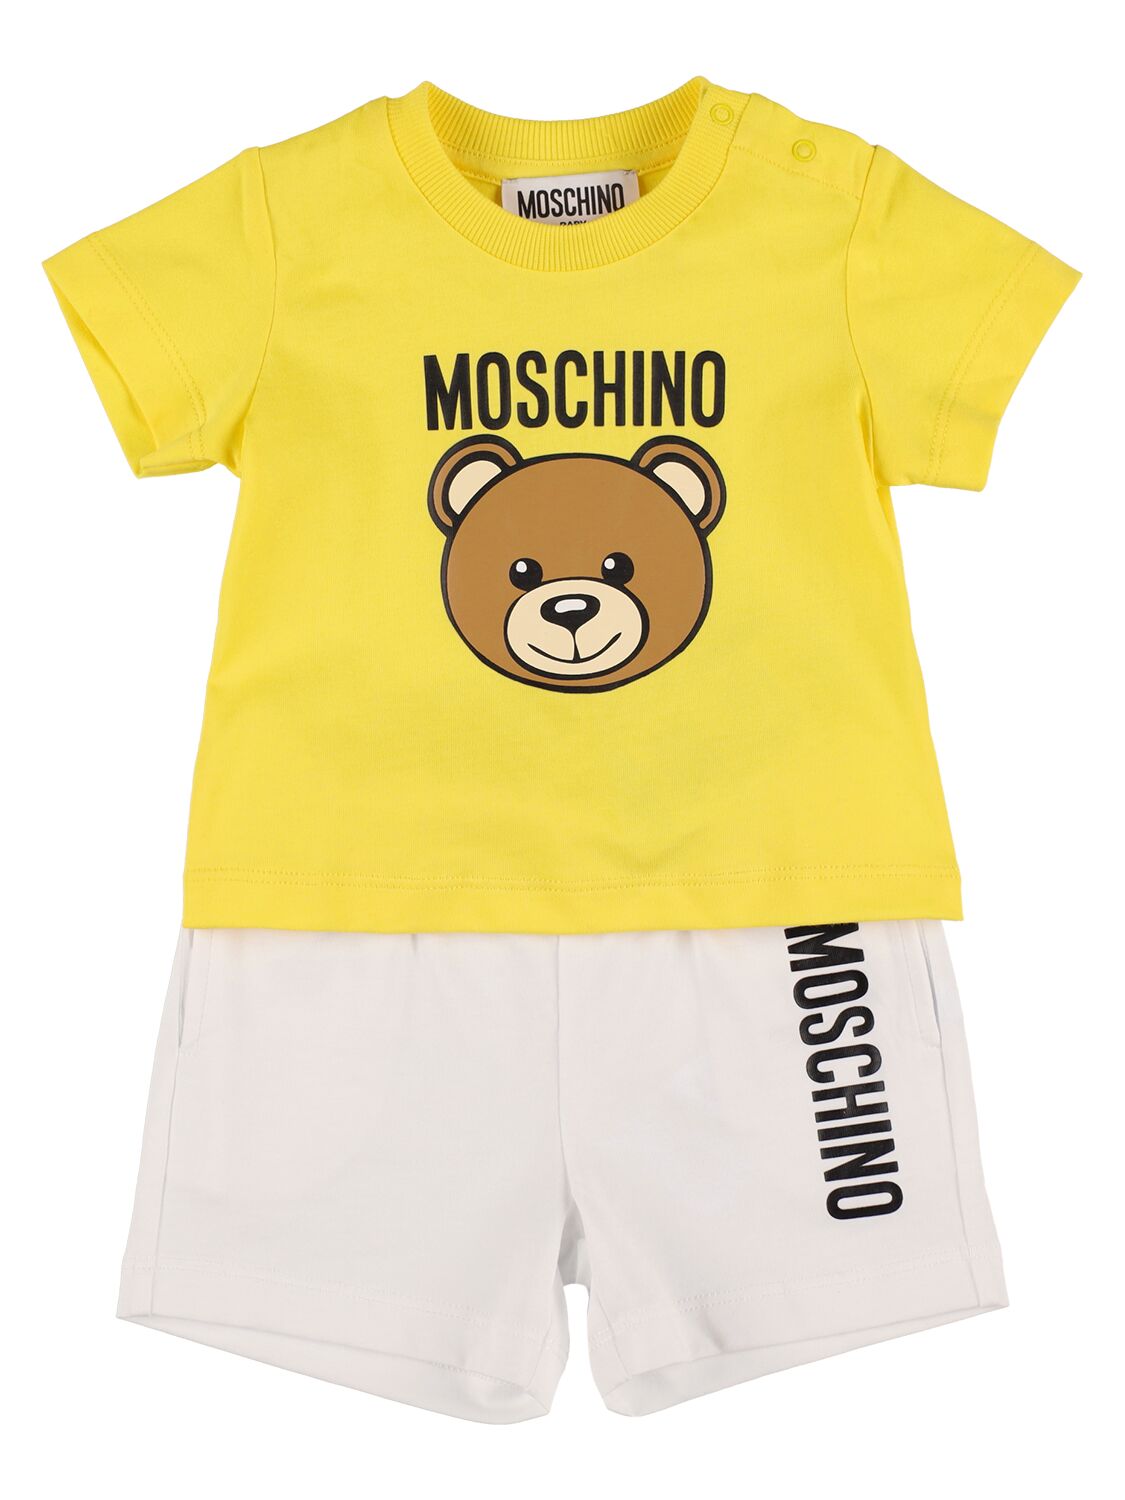 Moschino Kids' 棉质平纹针织t恤&短裤 In Yellow,white